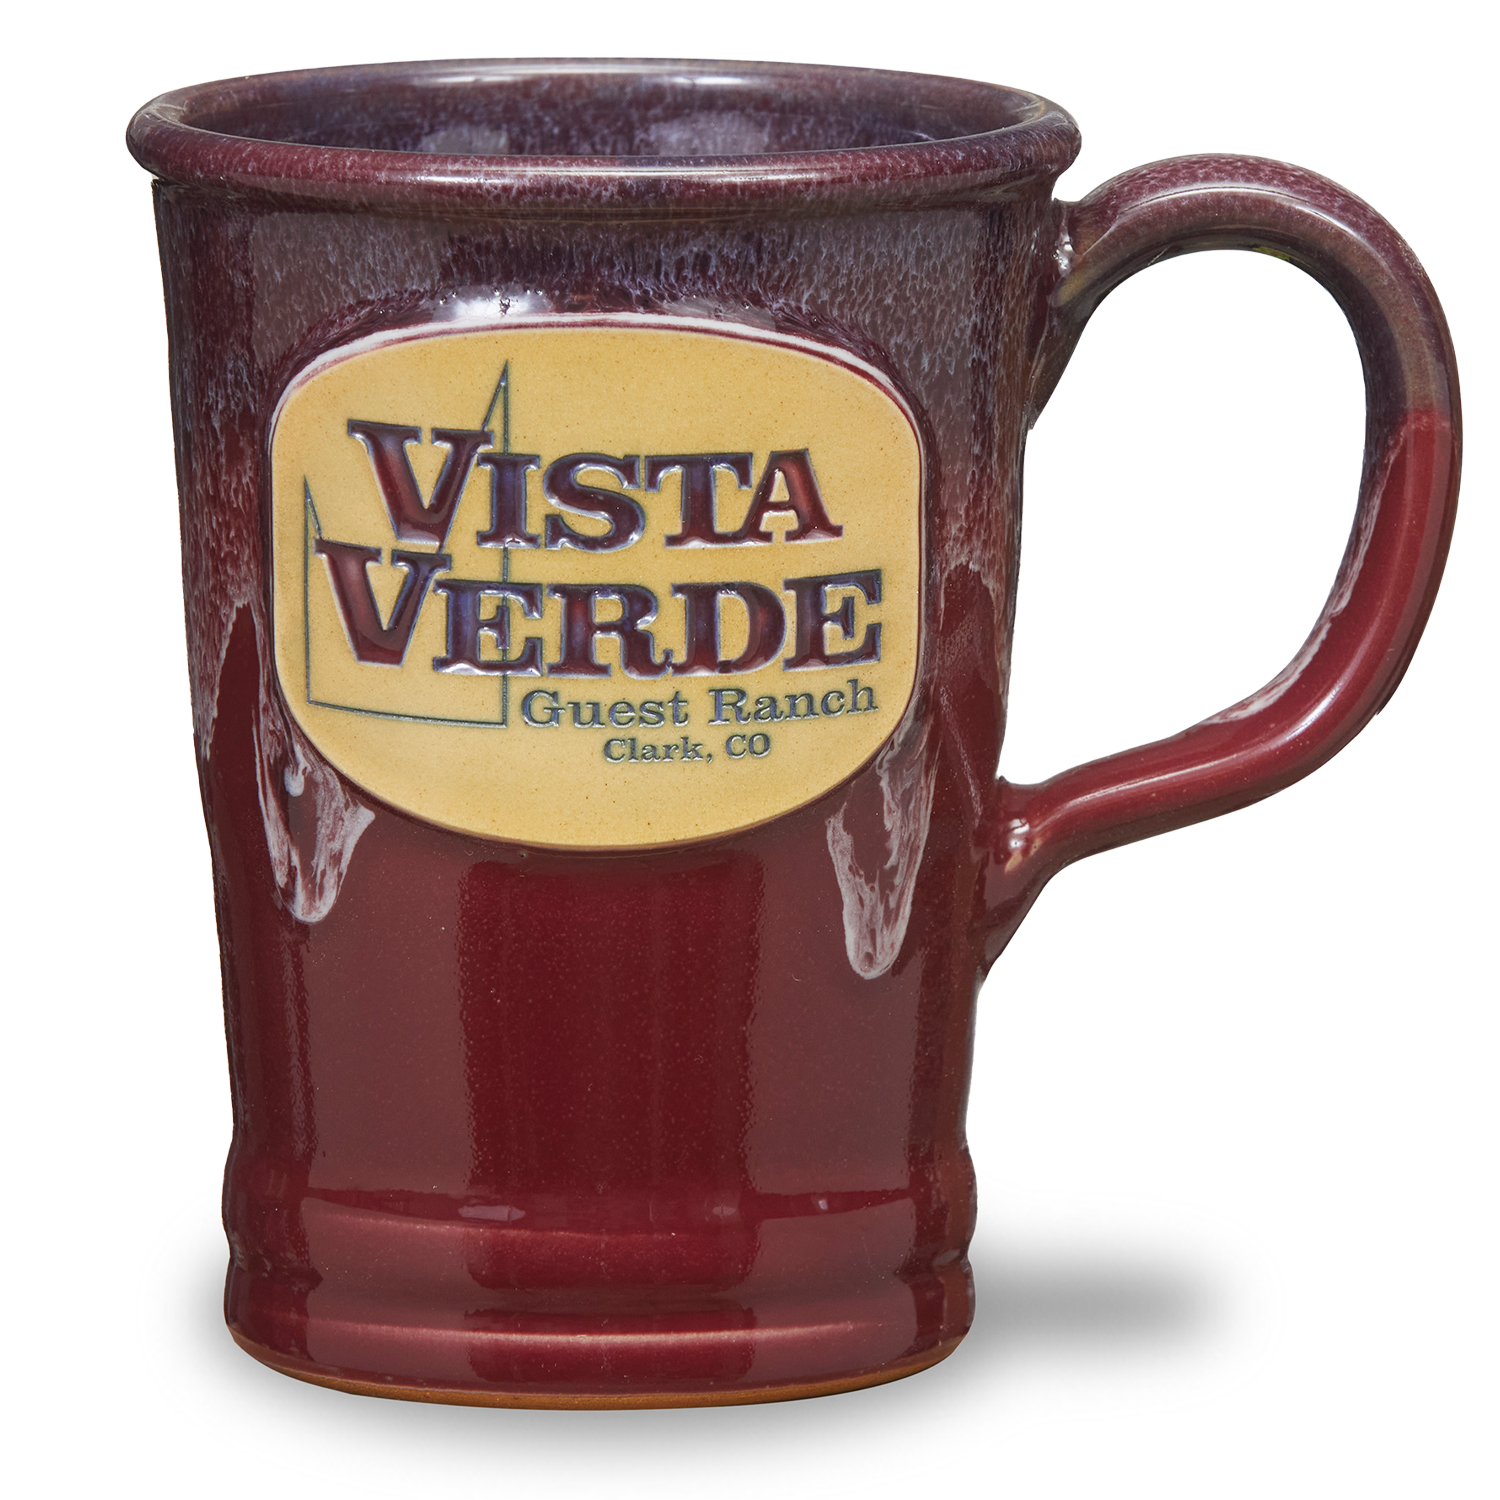 Vista Verde <a class='qbutton' href='https://deneenpottery.com/mug-styles/commuter/'>View More Details</a>